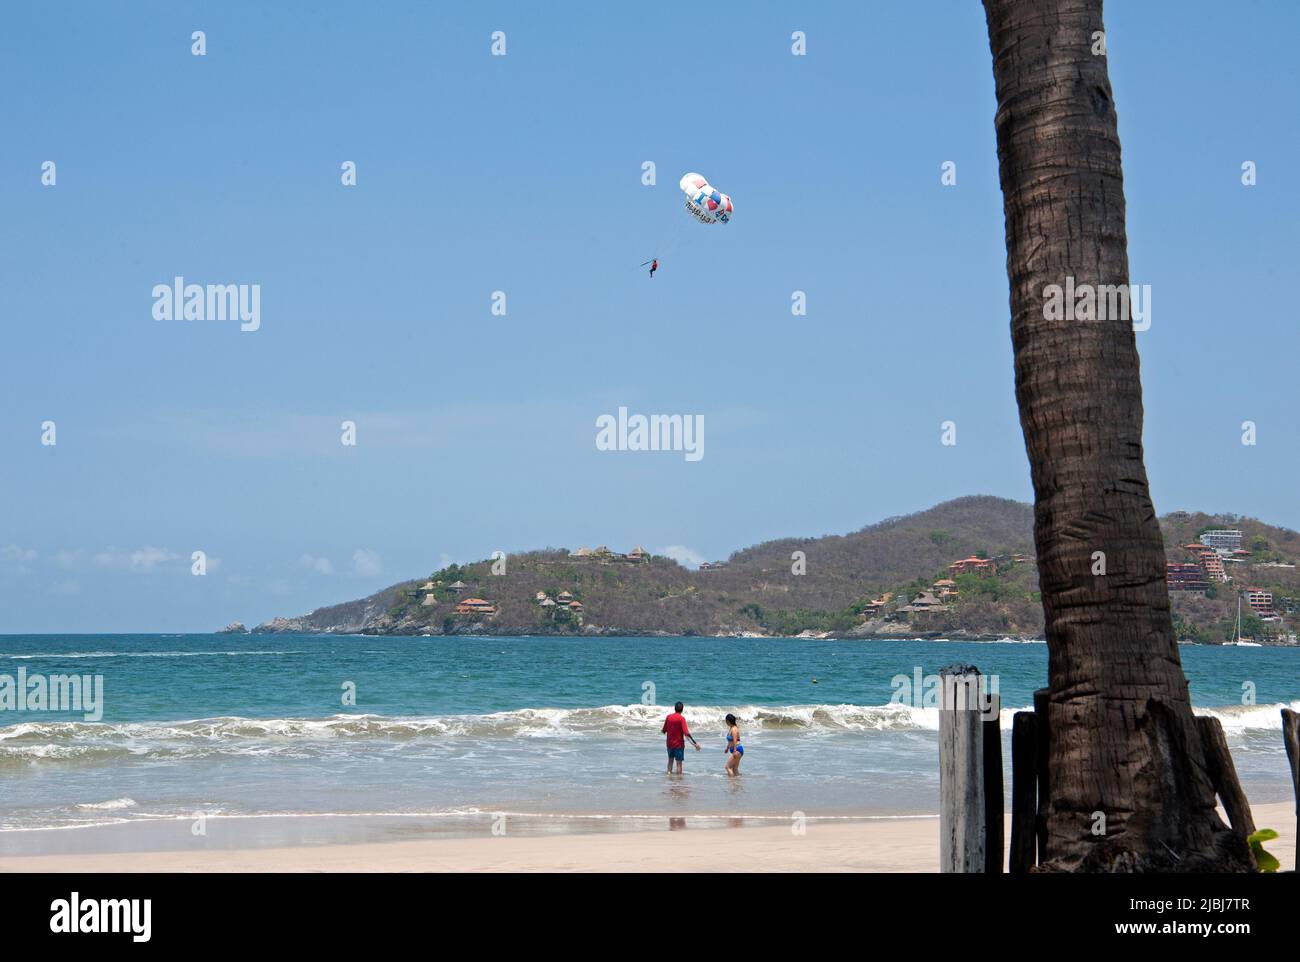 Parasailing at Playa La Ropa in Zihuatanejo, Mexico Stock Photo